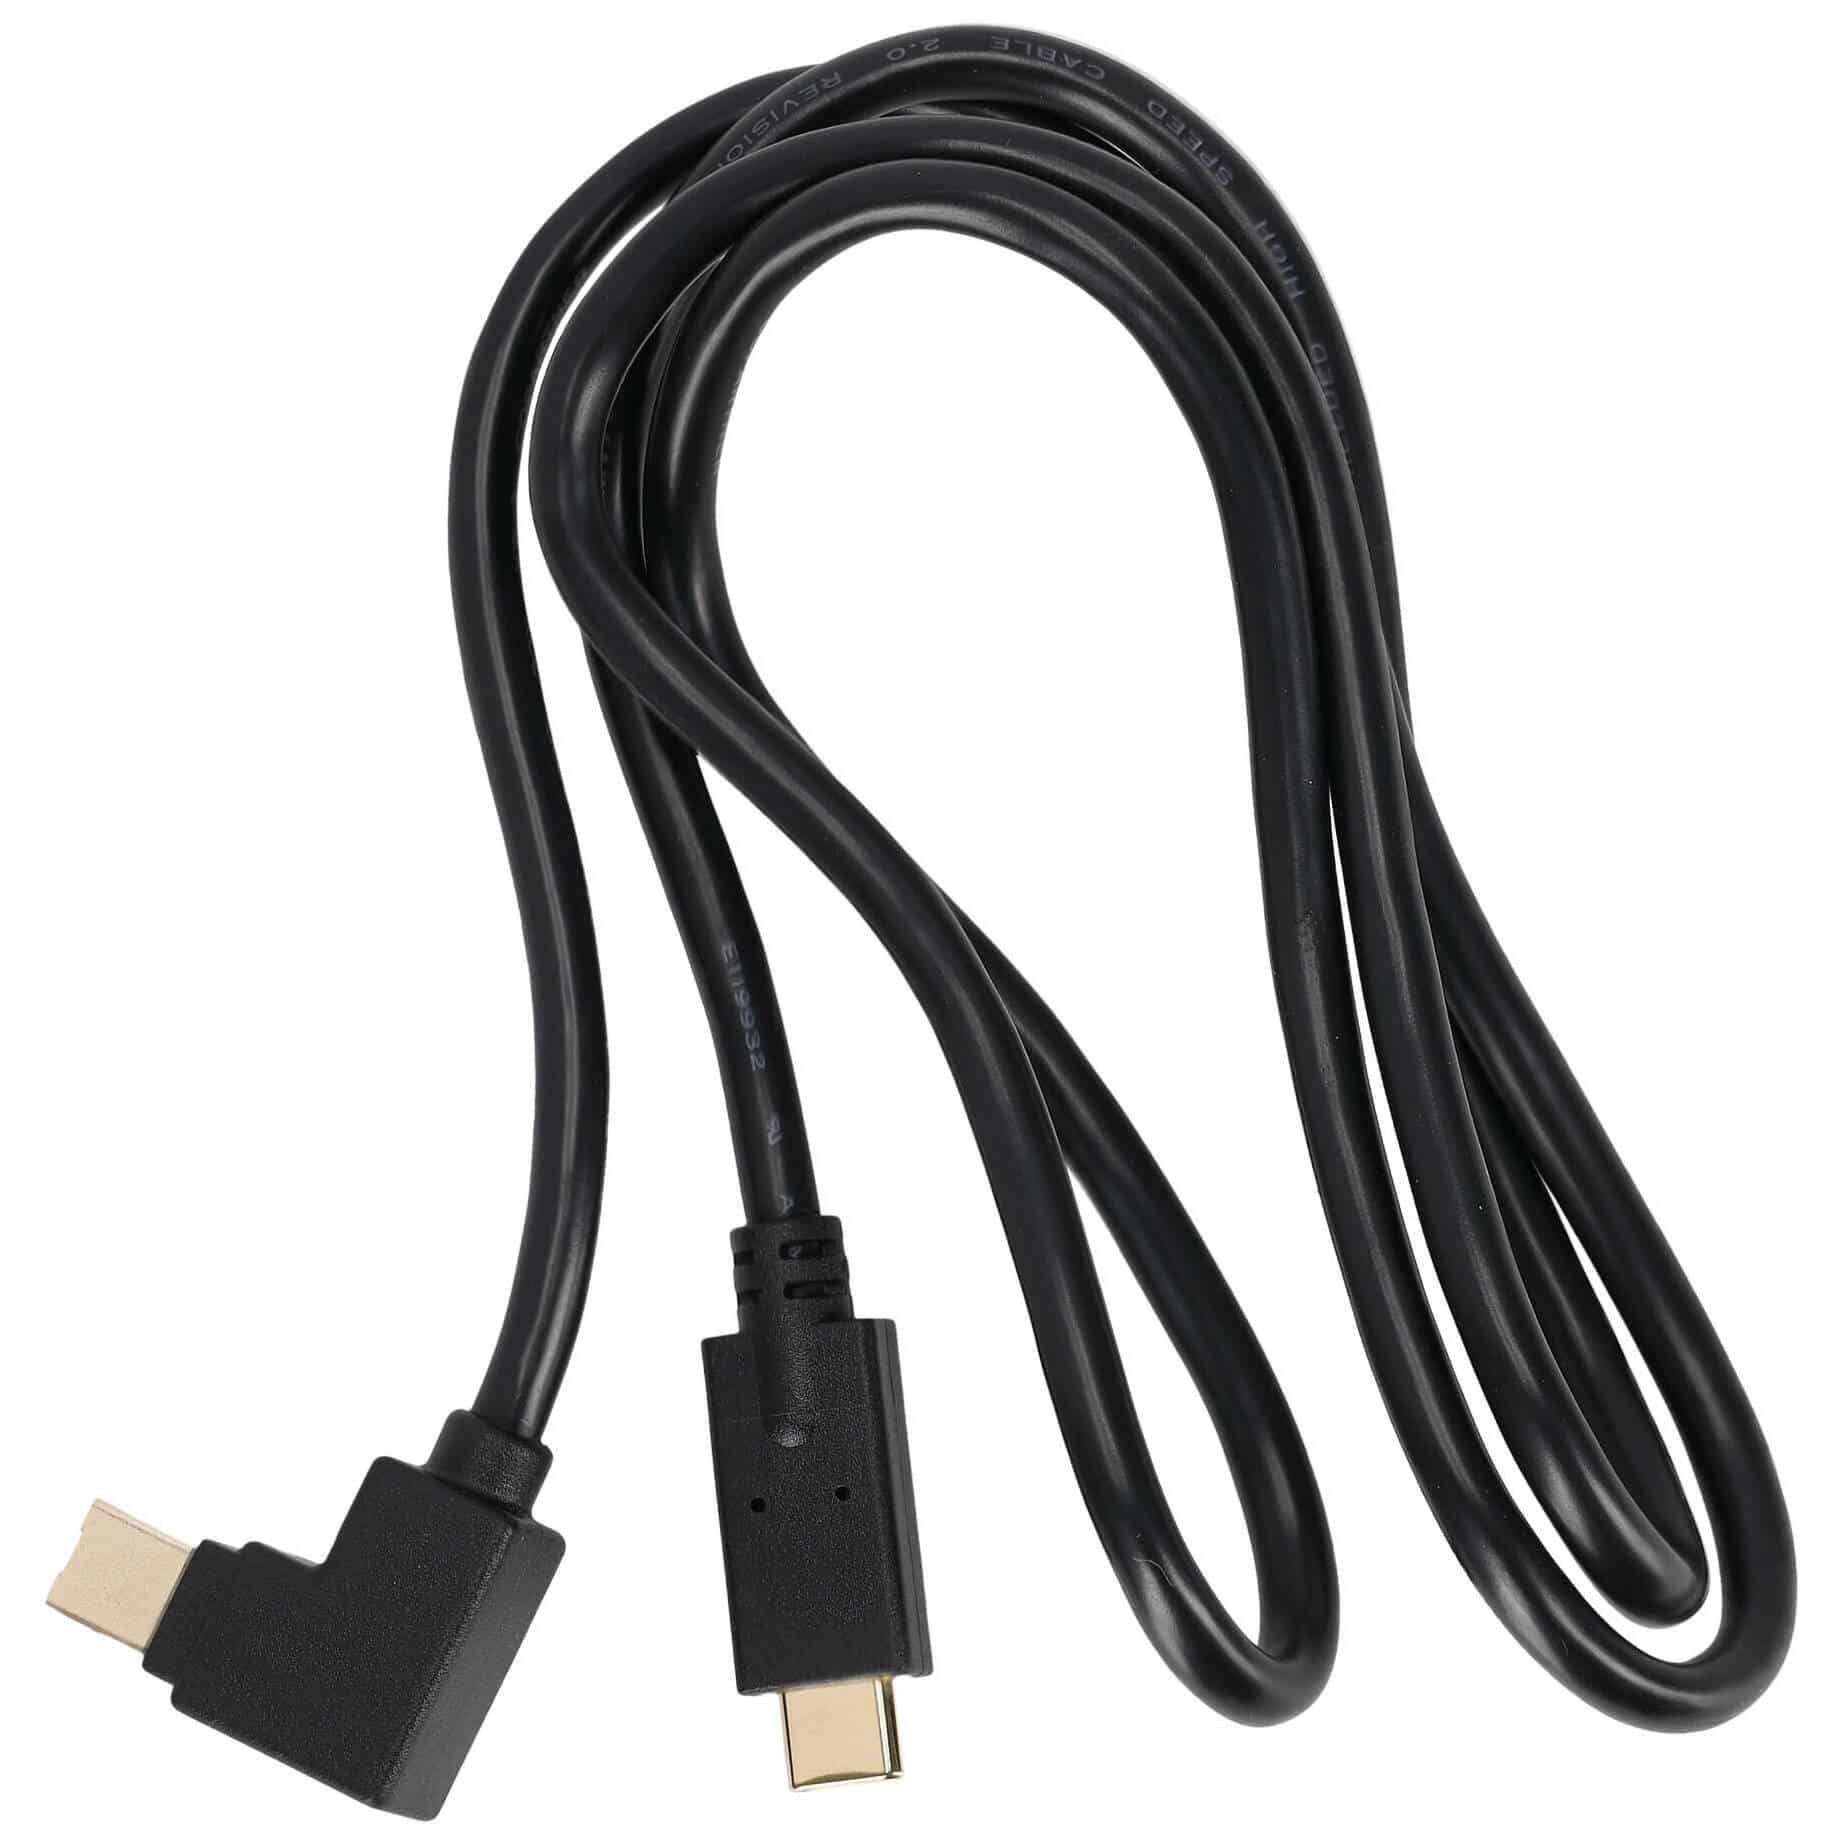 RME USB-C Kabel für Babyface Pro FS